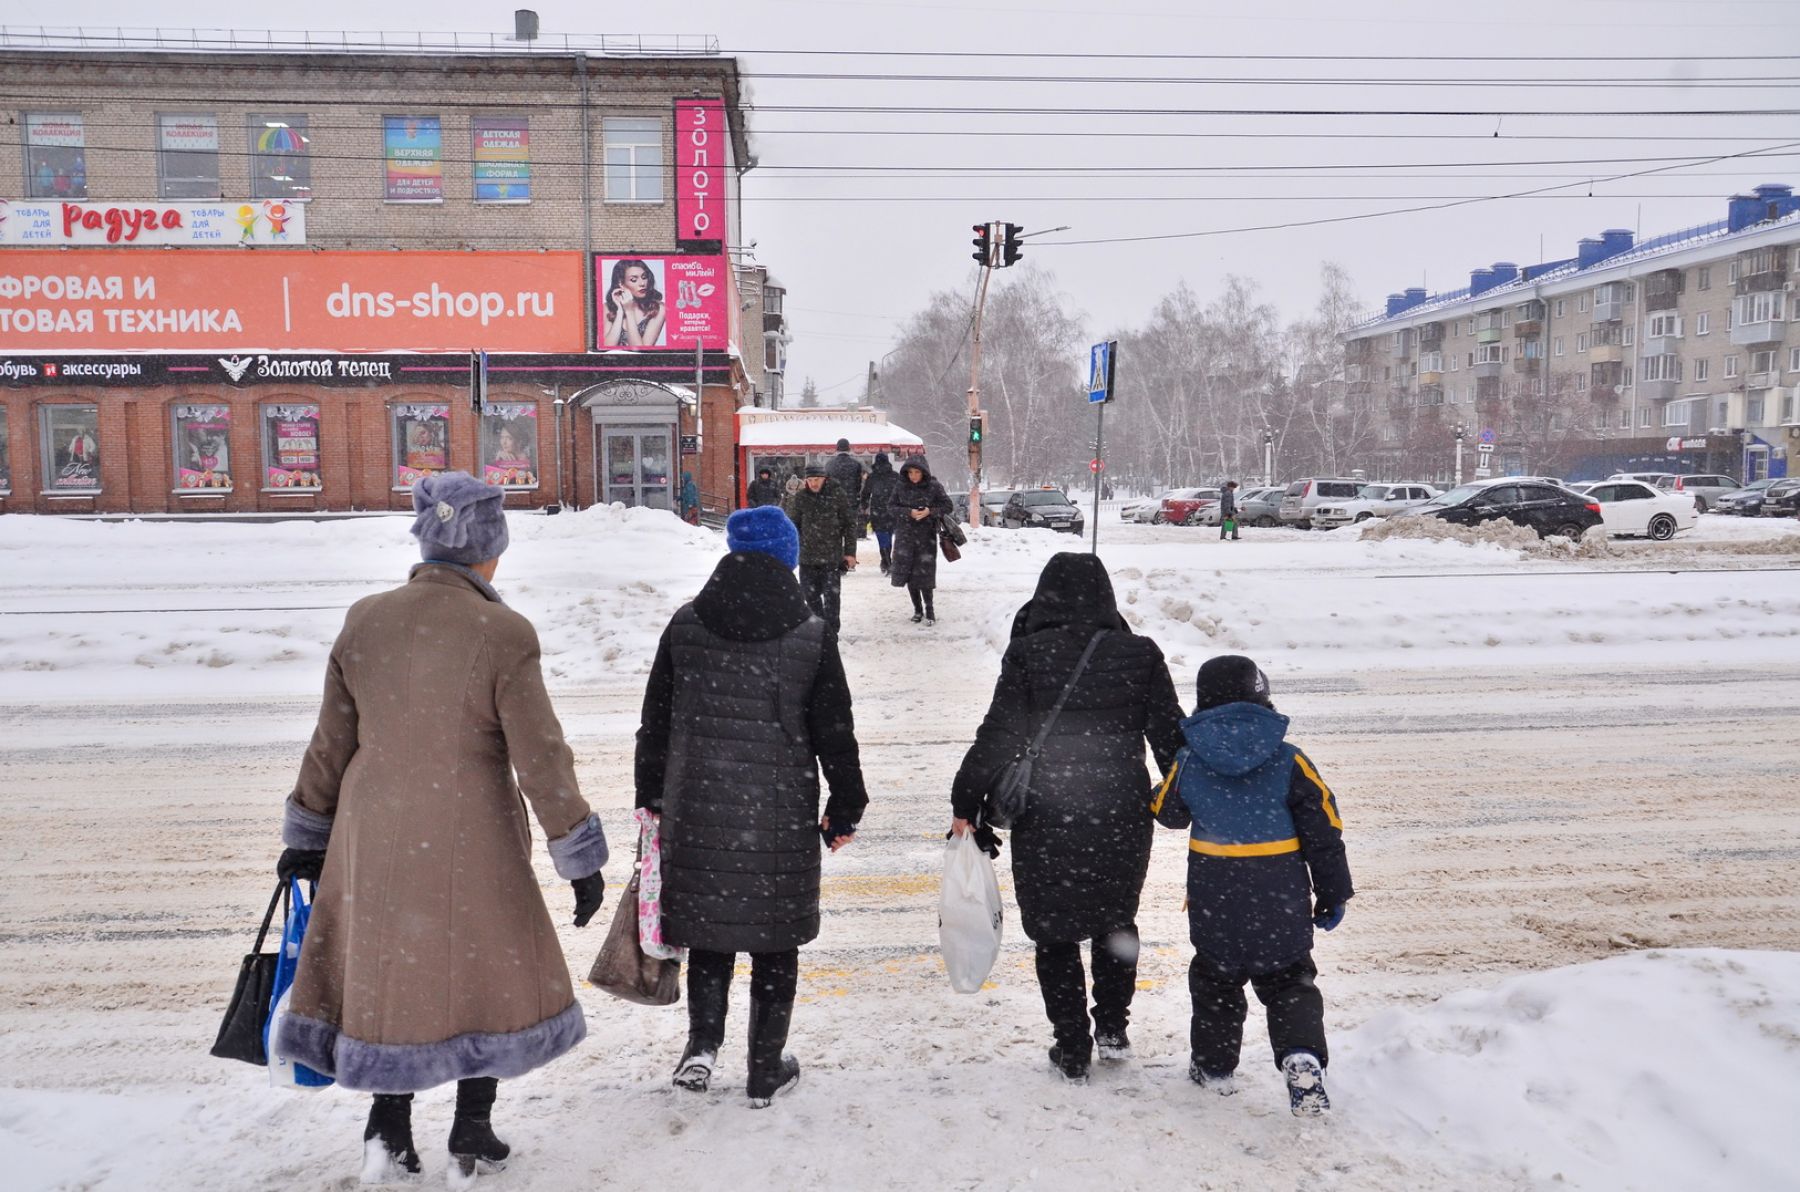 Дороги чистят - толку нет: как обстоит дело с уборкой снега в Бийске